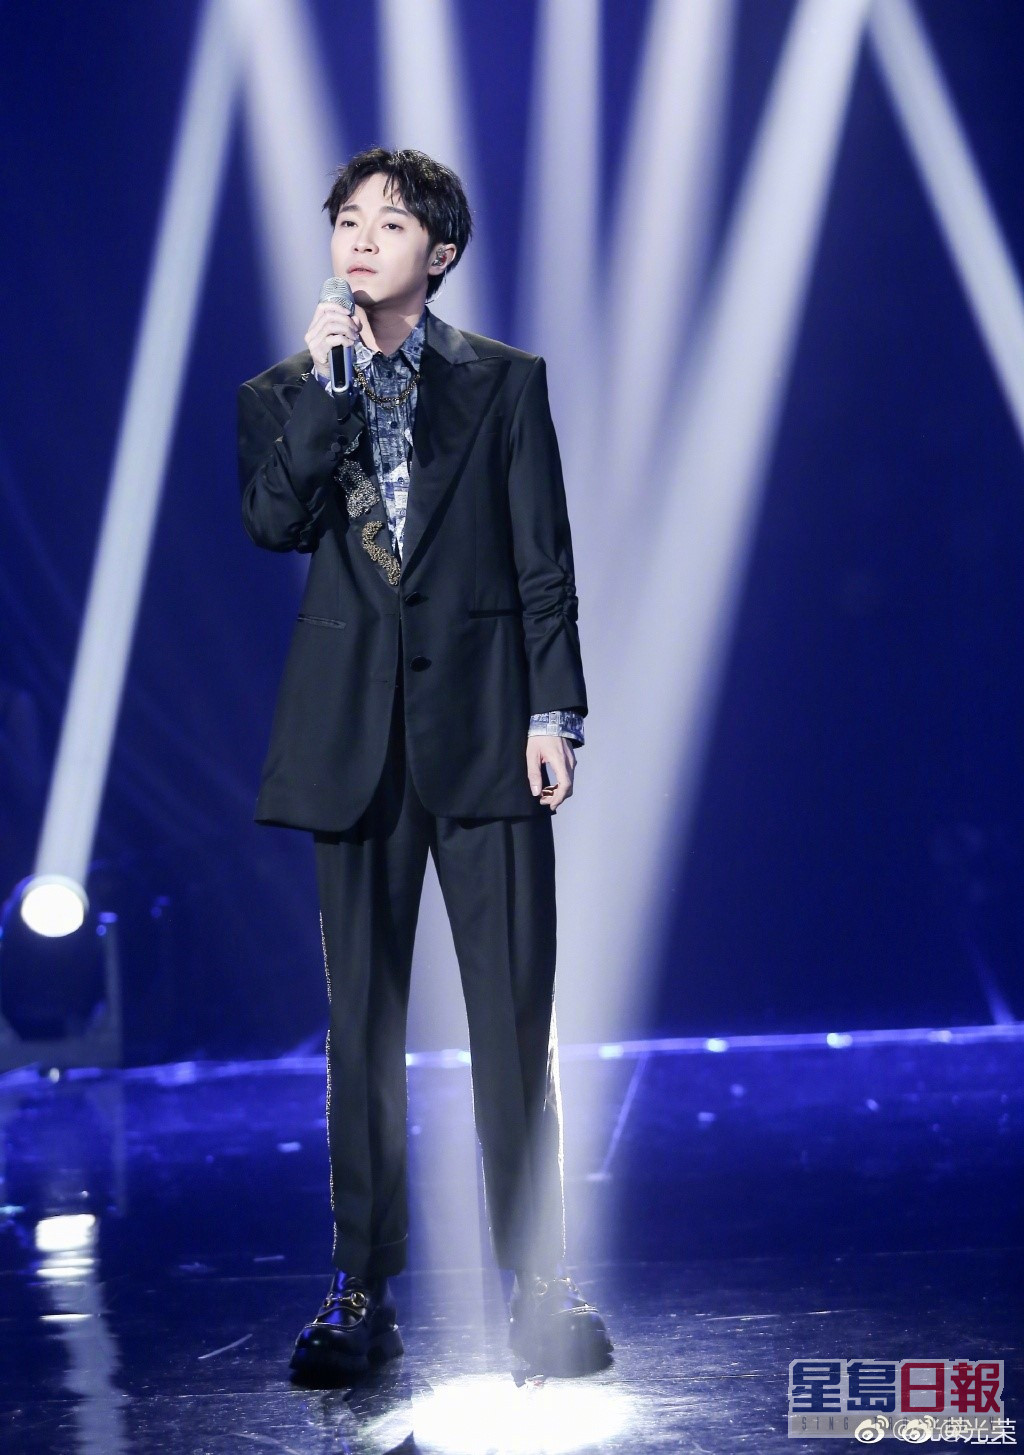 吳青峰之前參加過湖南衛視音樂競技節目《歌手》。